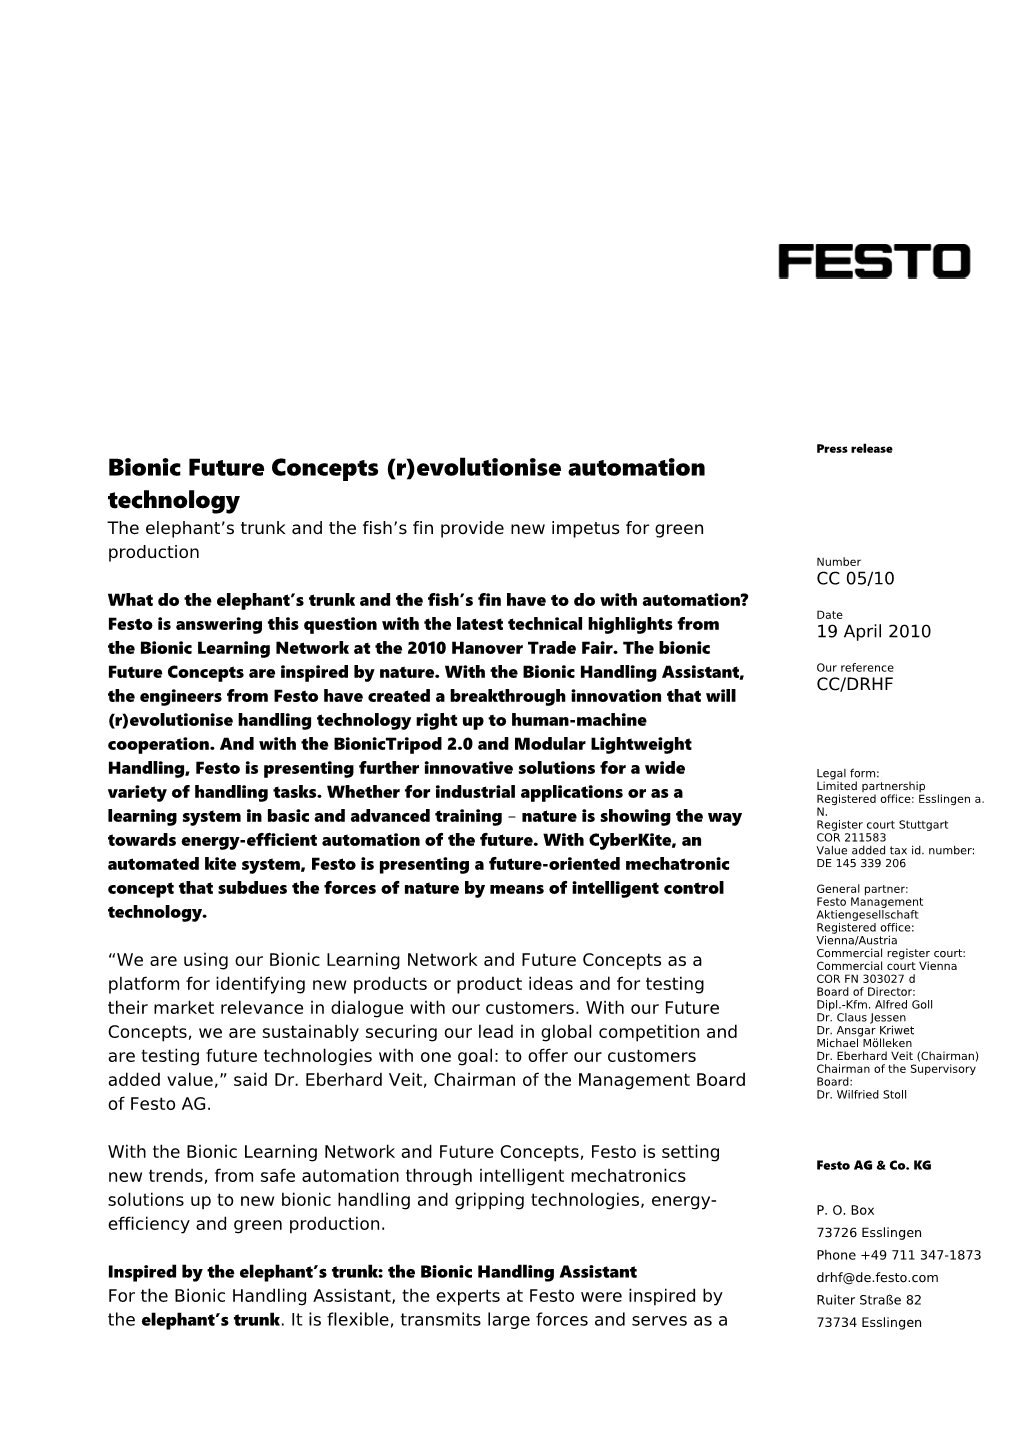 Festo AG & Co. KG P. O. Box 73726 Esslingen Phone+49 711 347-1873 Ruiter Straße 82 73734